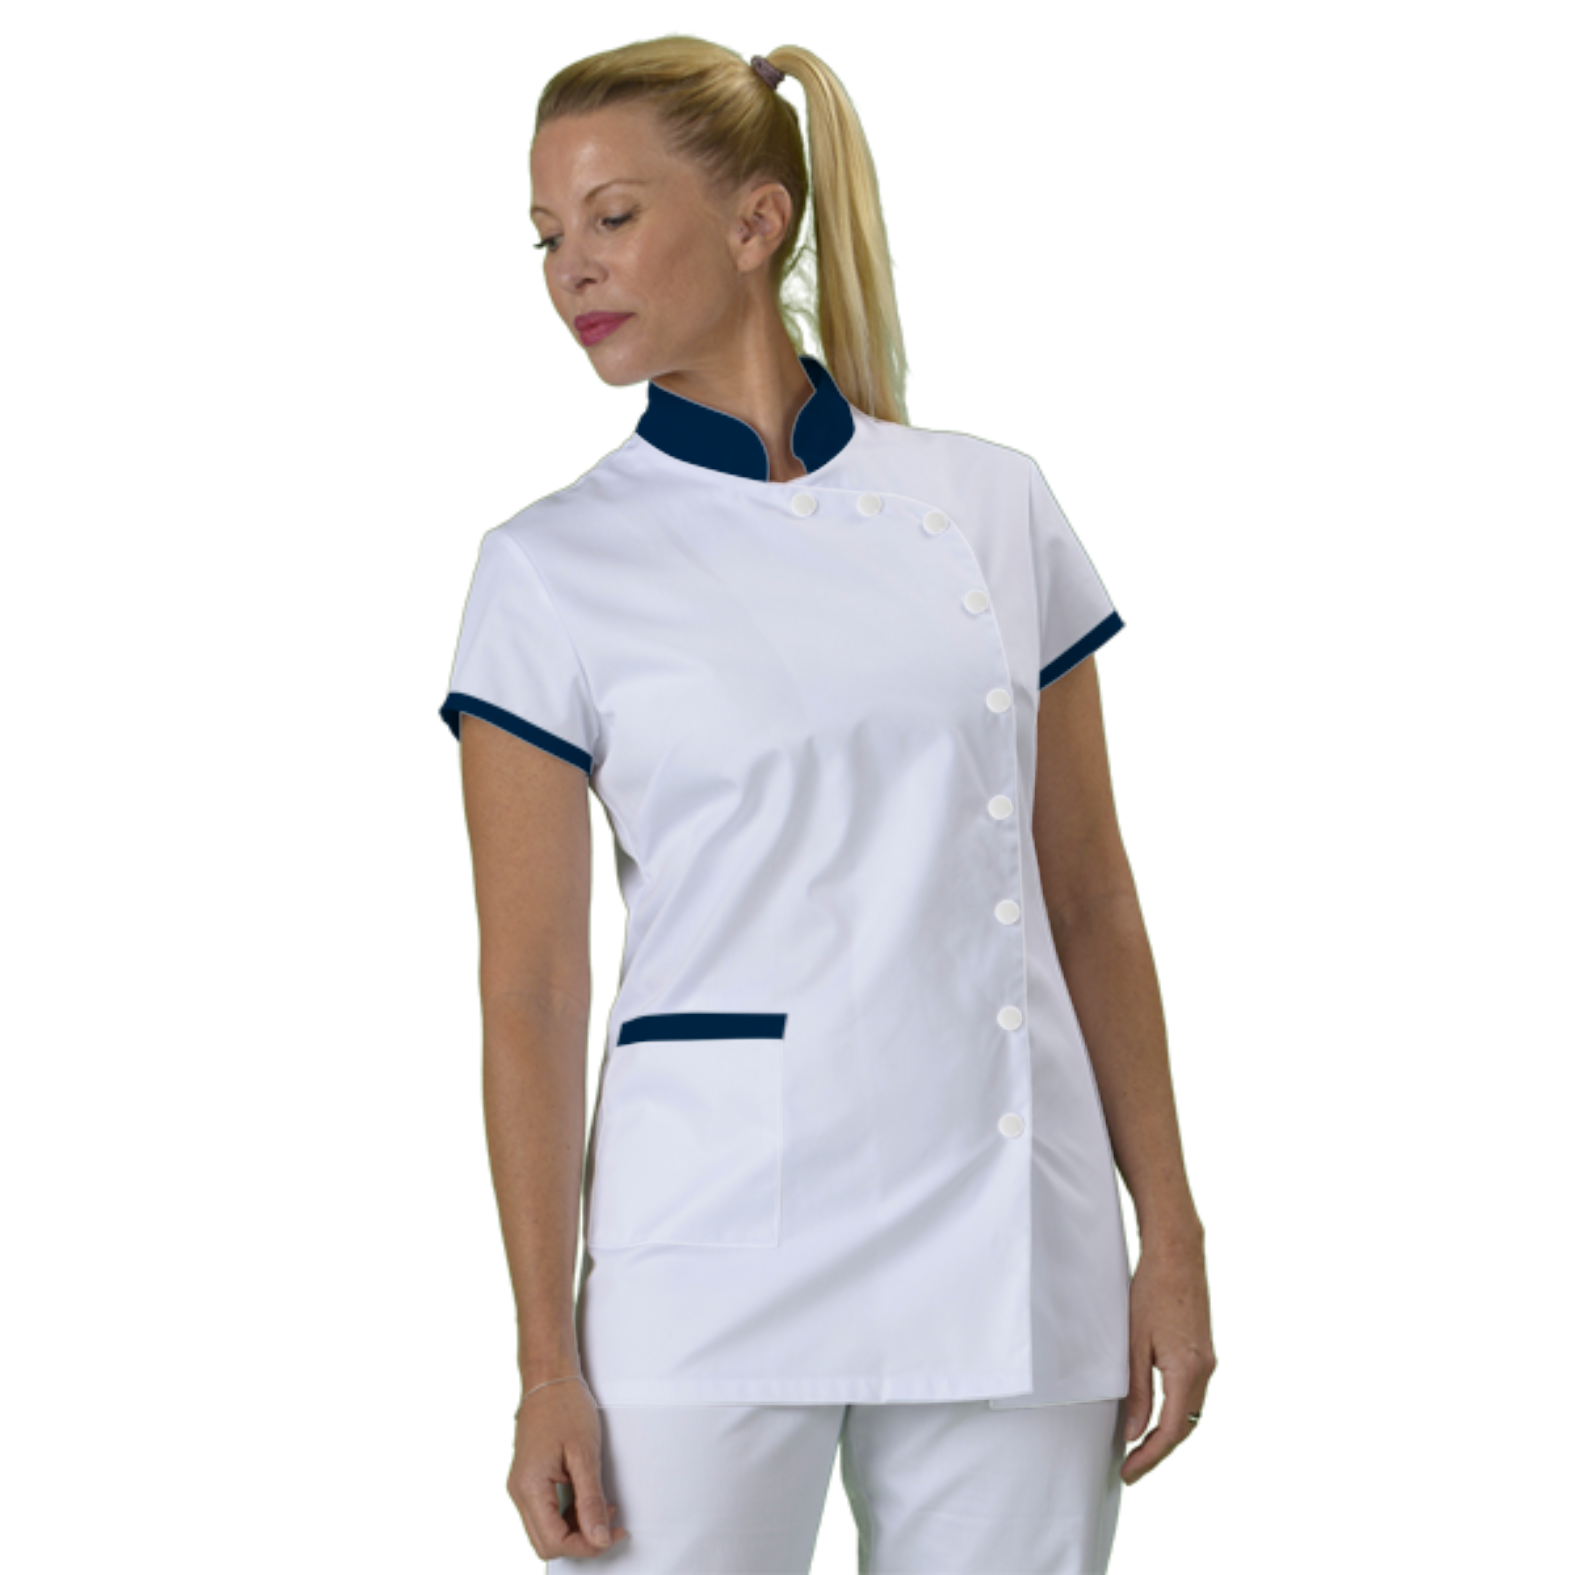 tunique-medicale-infirmiere-personnalisee-col-mao acheté - par Sophie - le 06-10-2018